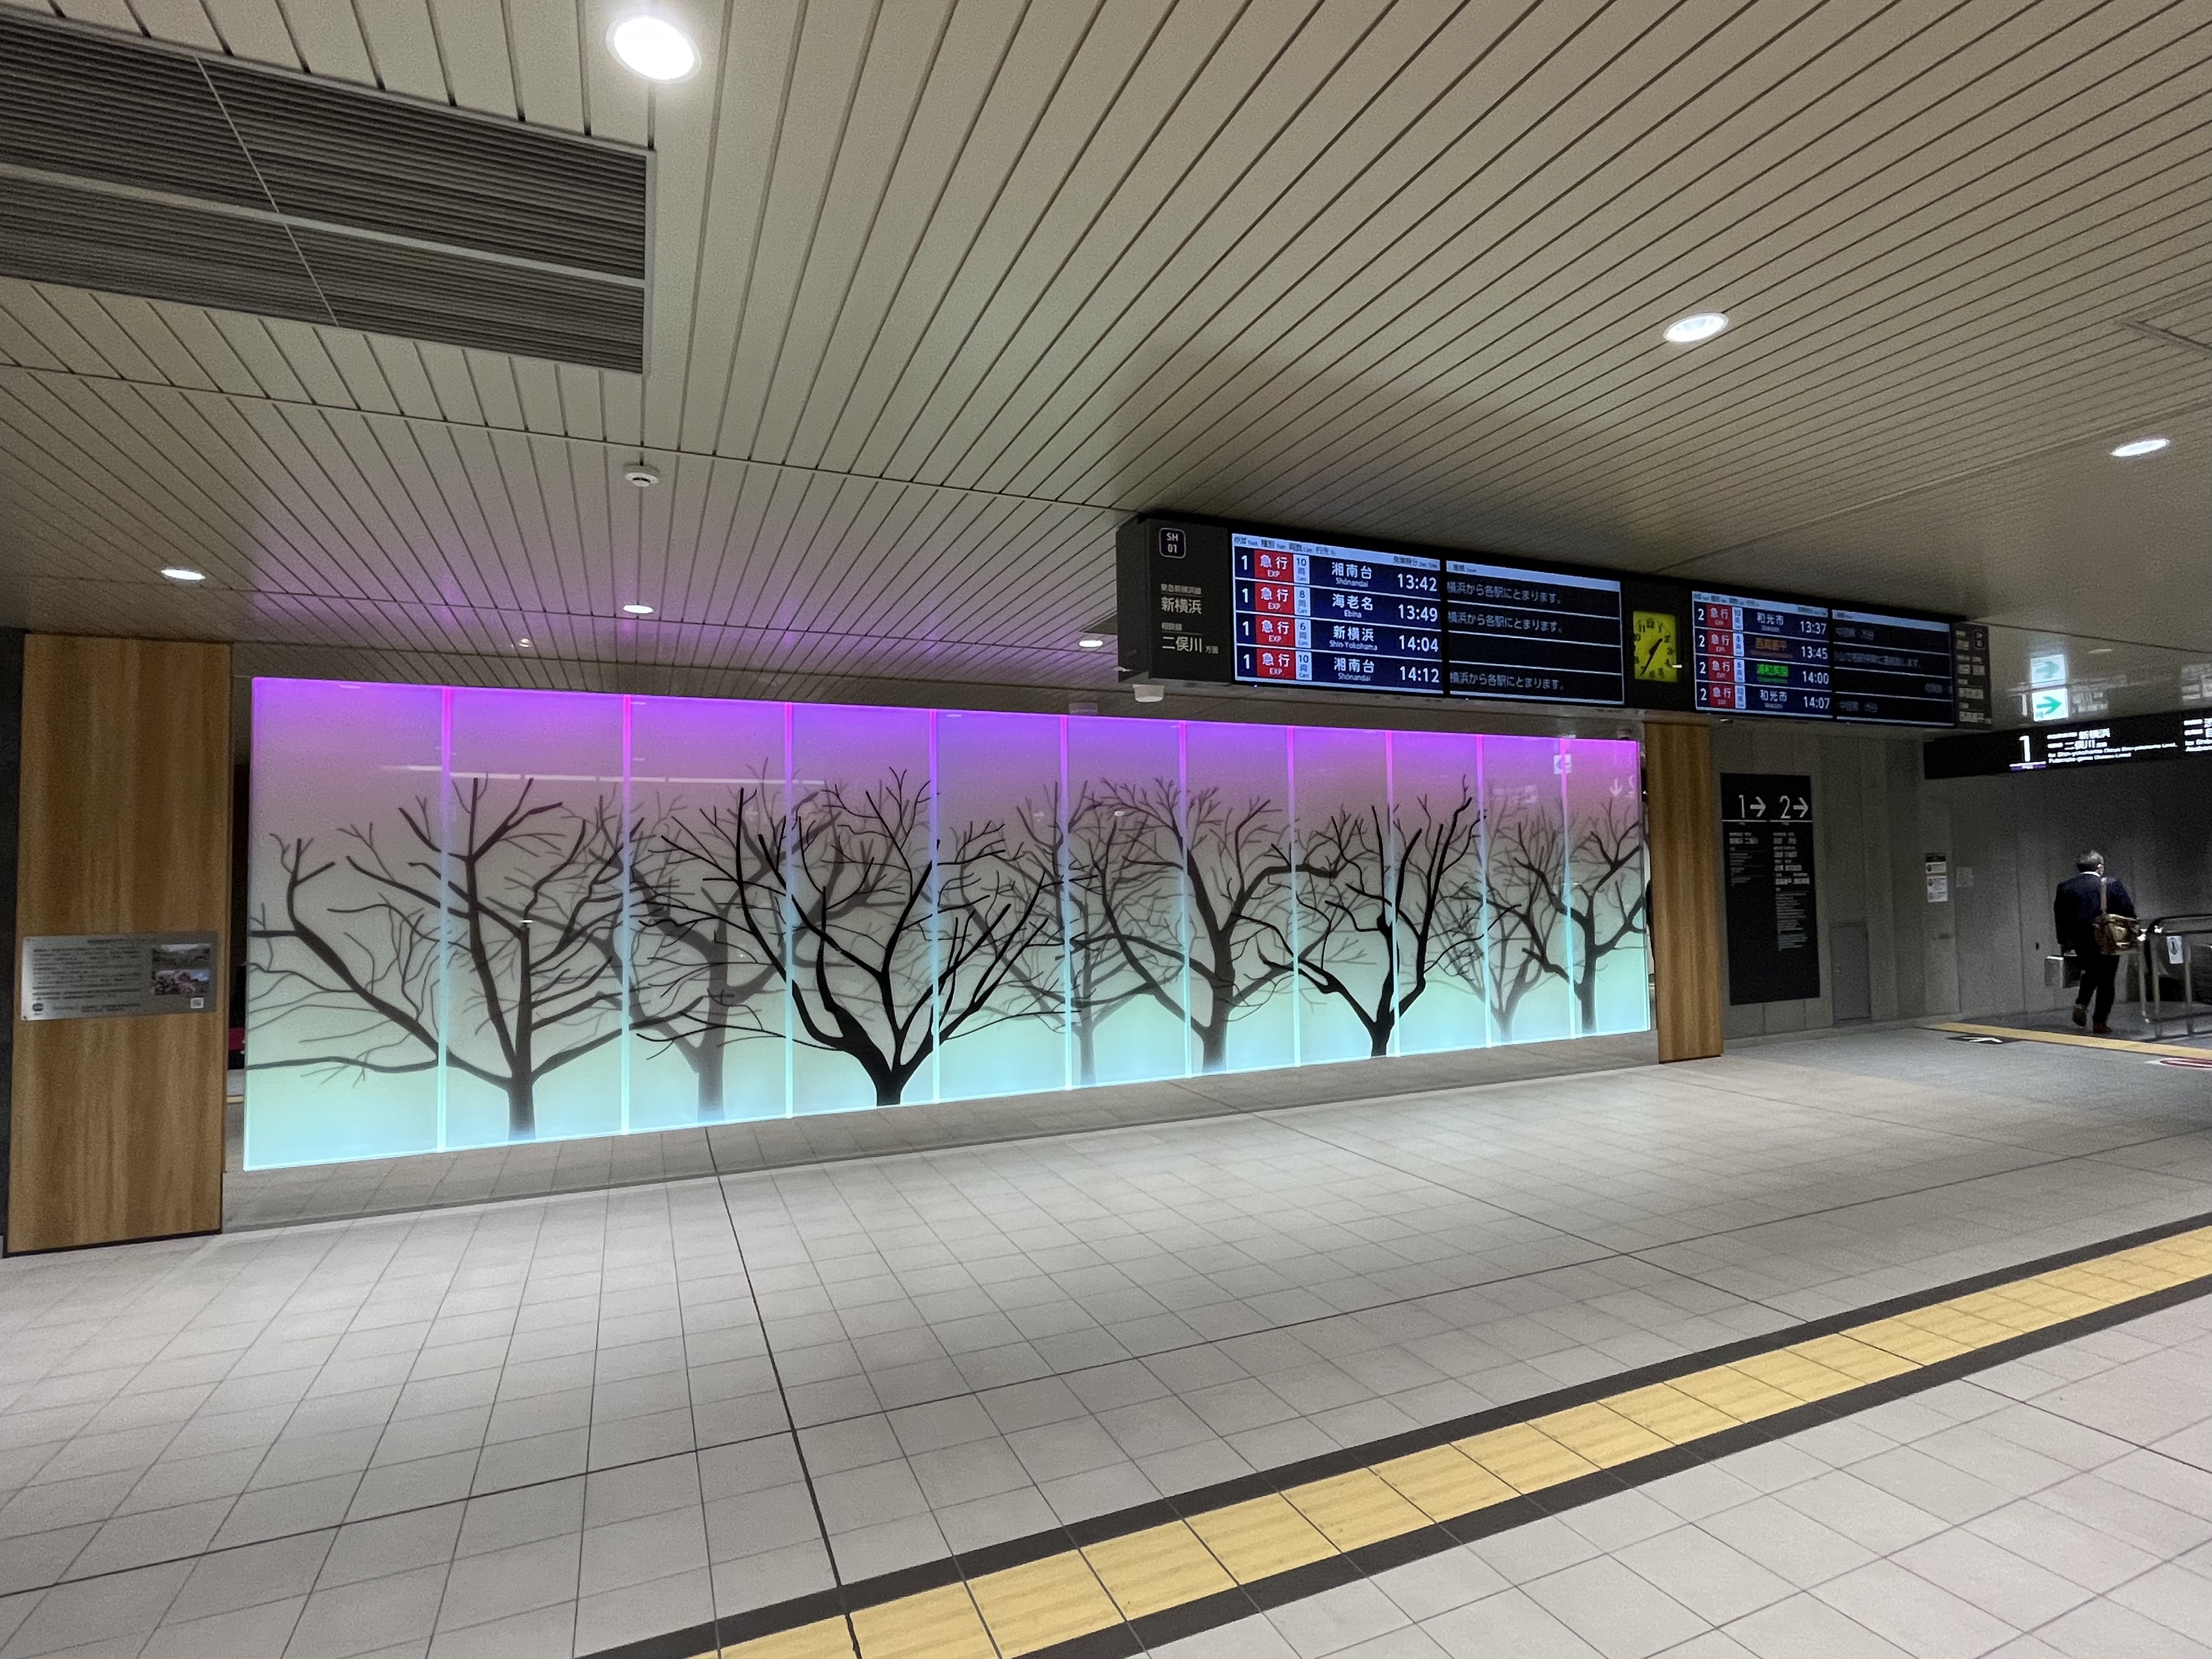 新綱島駅